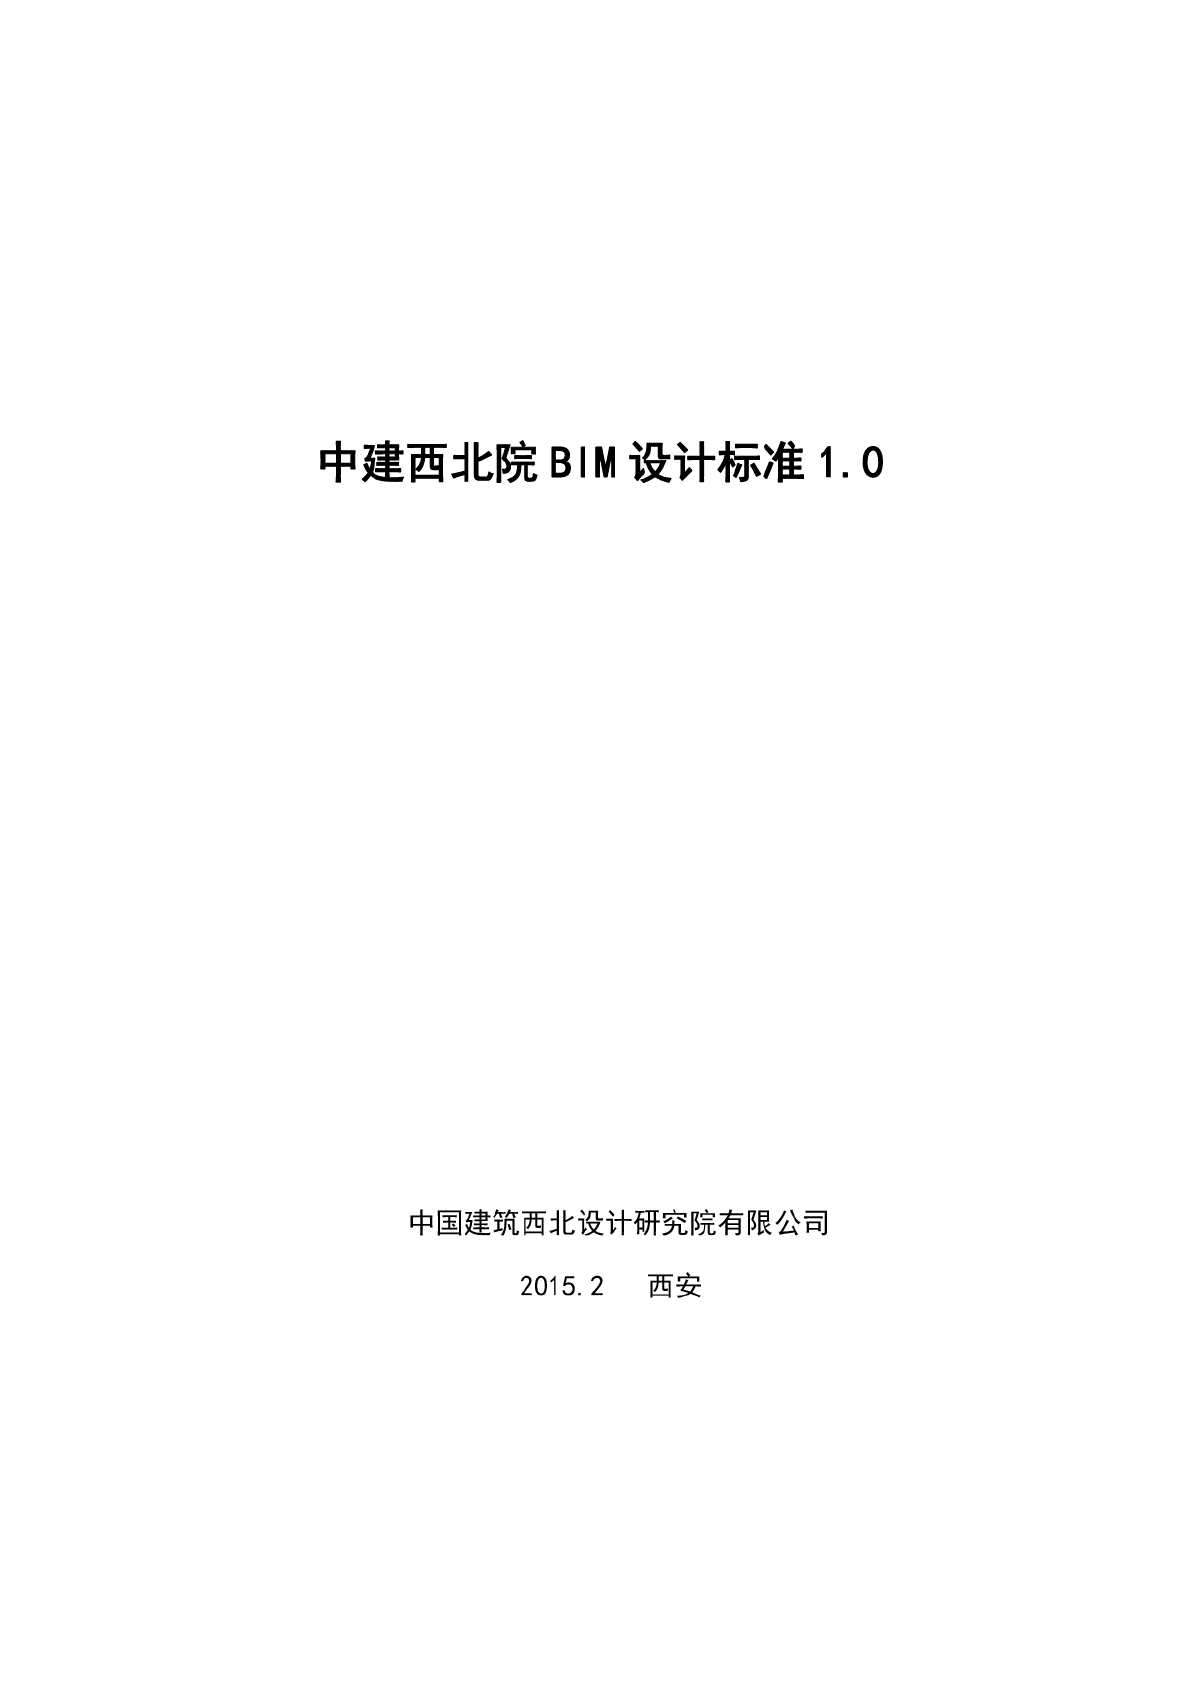 中建西北院BIM标准   pdf 